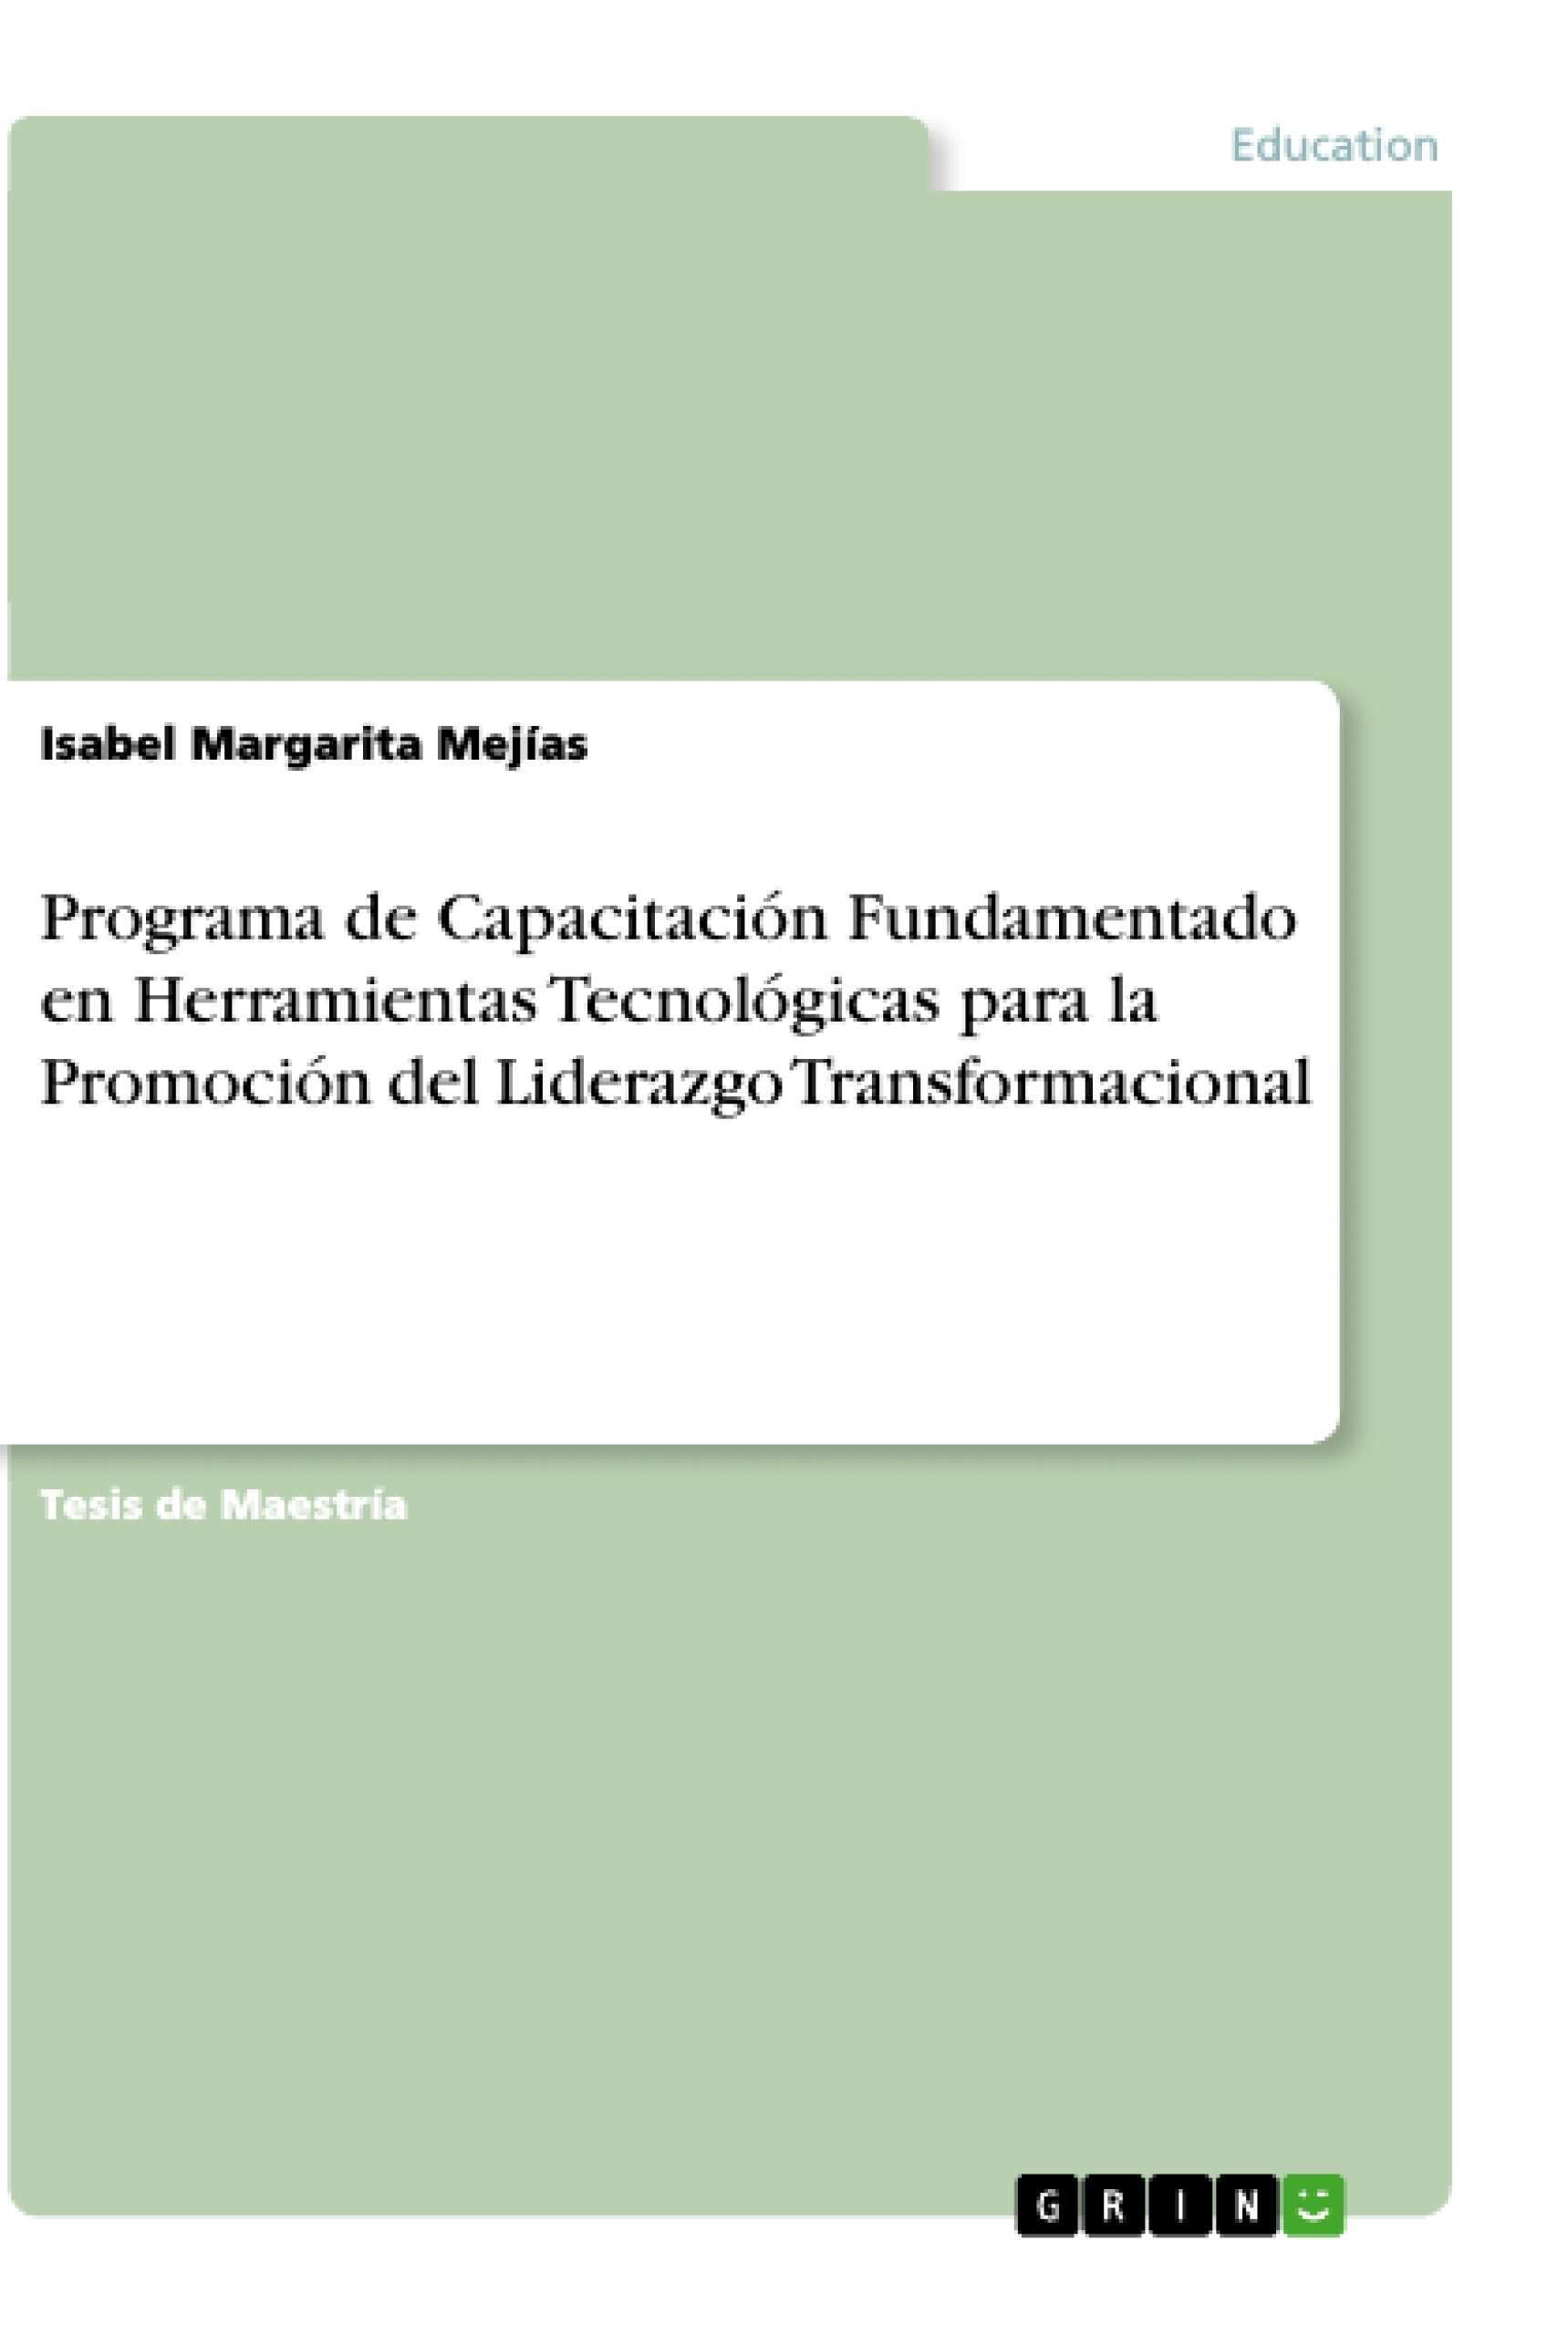 Título: Programa de Capacitación Fundamentado en Herramientas Tecnológicas para la Promoción del Liderazgo Transformacional